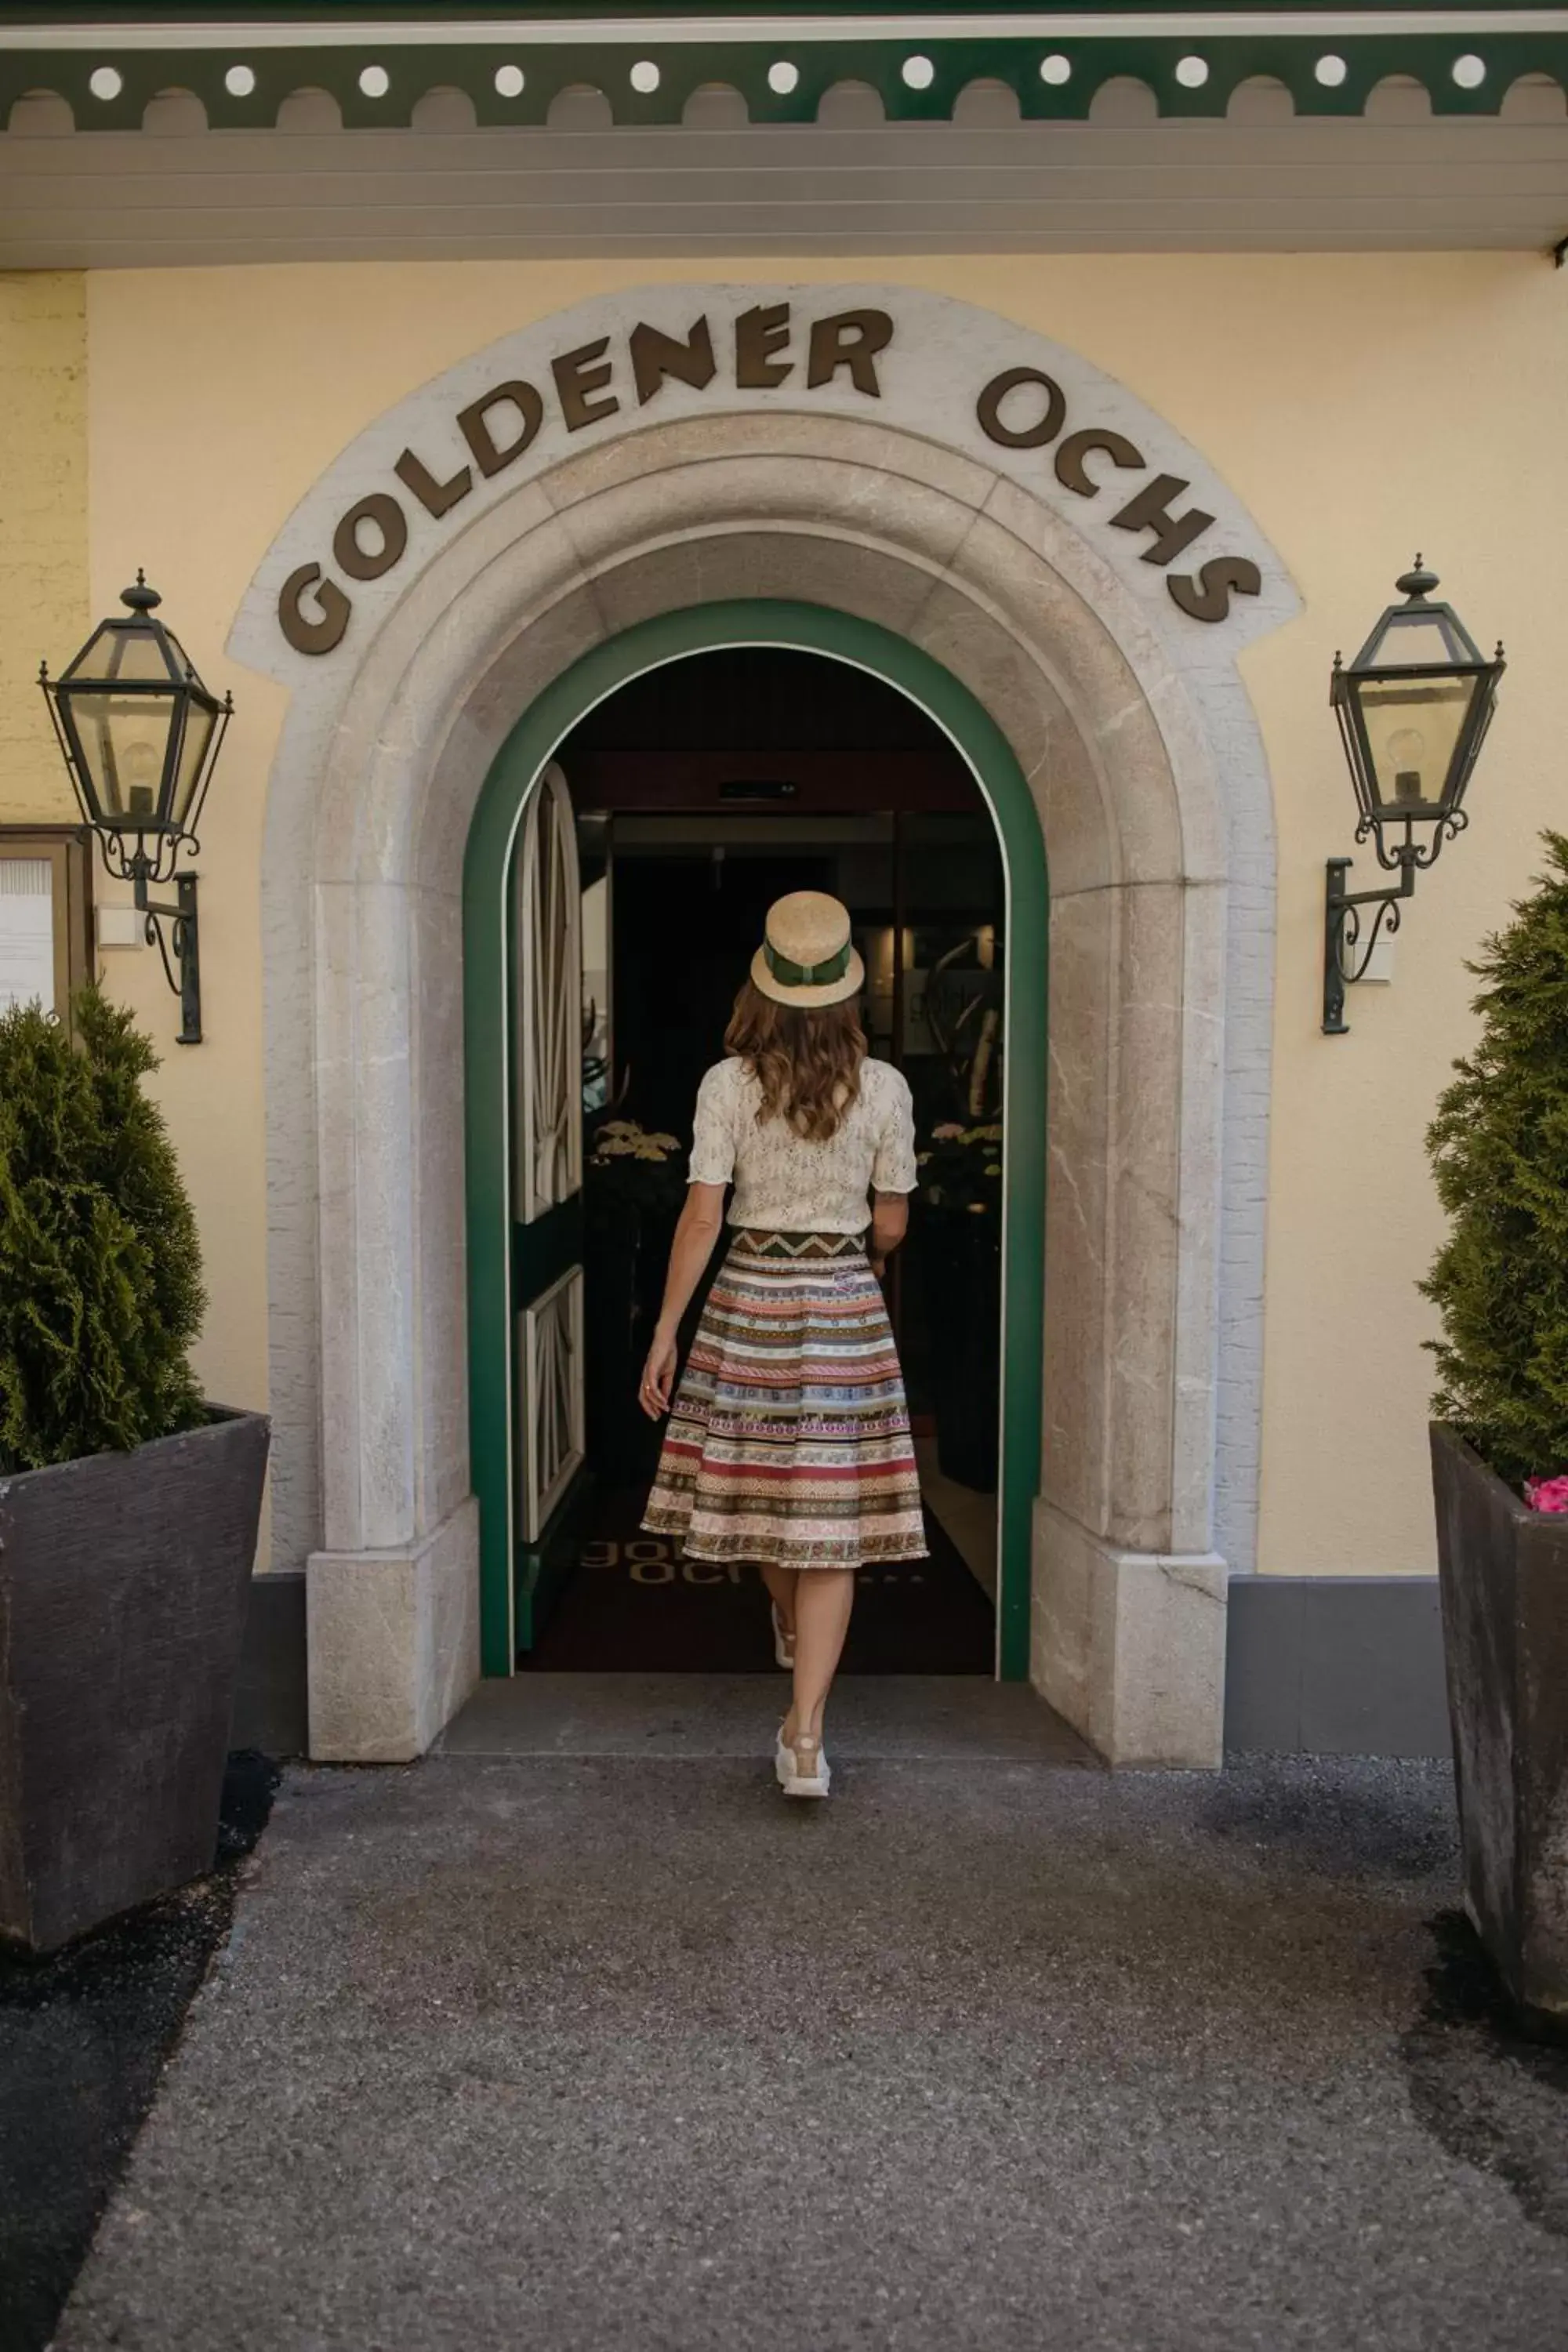 Facade/entrance in Hotel Goldener Ochs